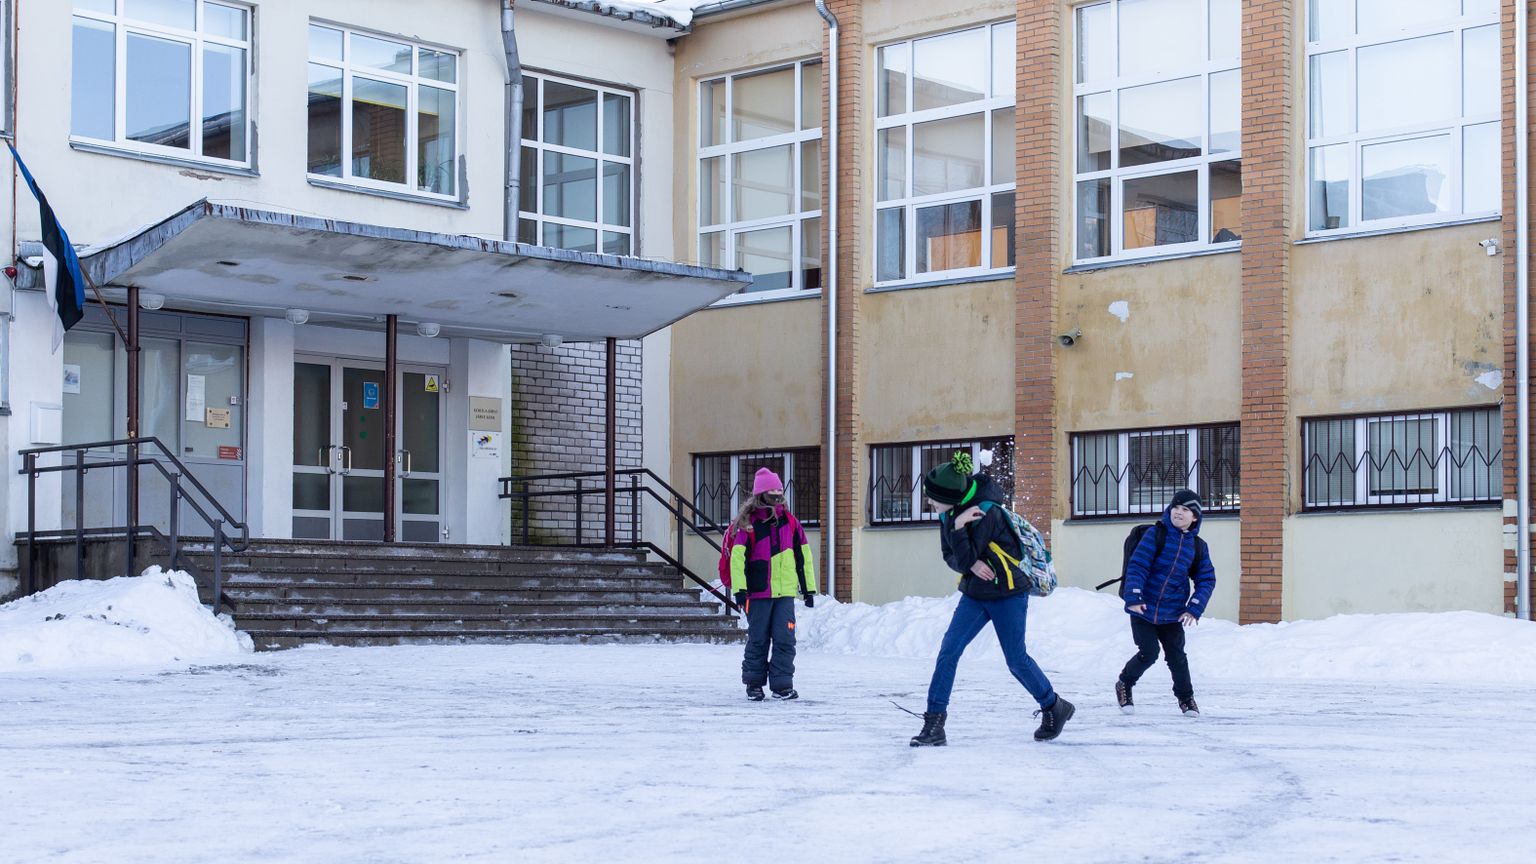 Järve kool moodustus 2019. aastal pärast Kohtla-Järve riigigümnaasiumi loomist endise Järve gümnaasiumi põhikooli osa baasil.